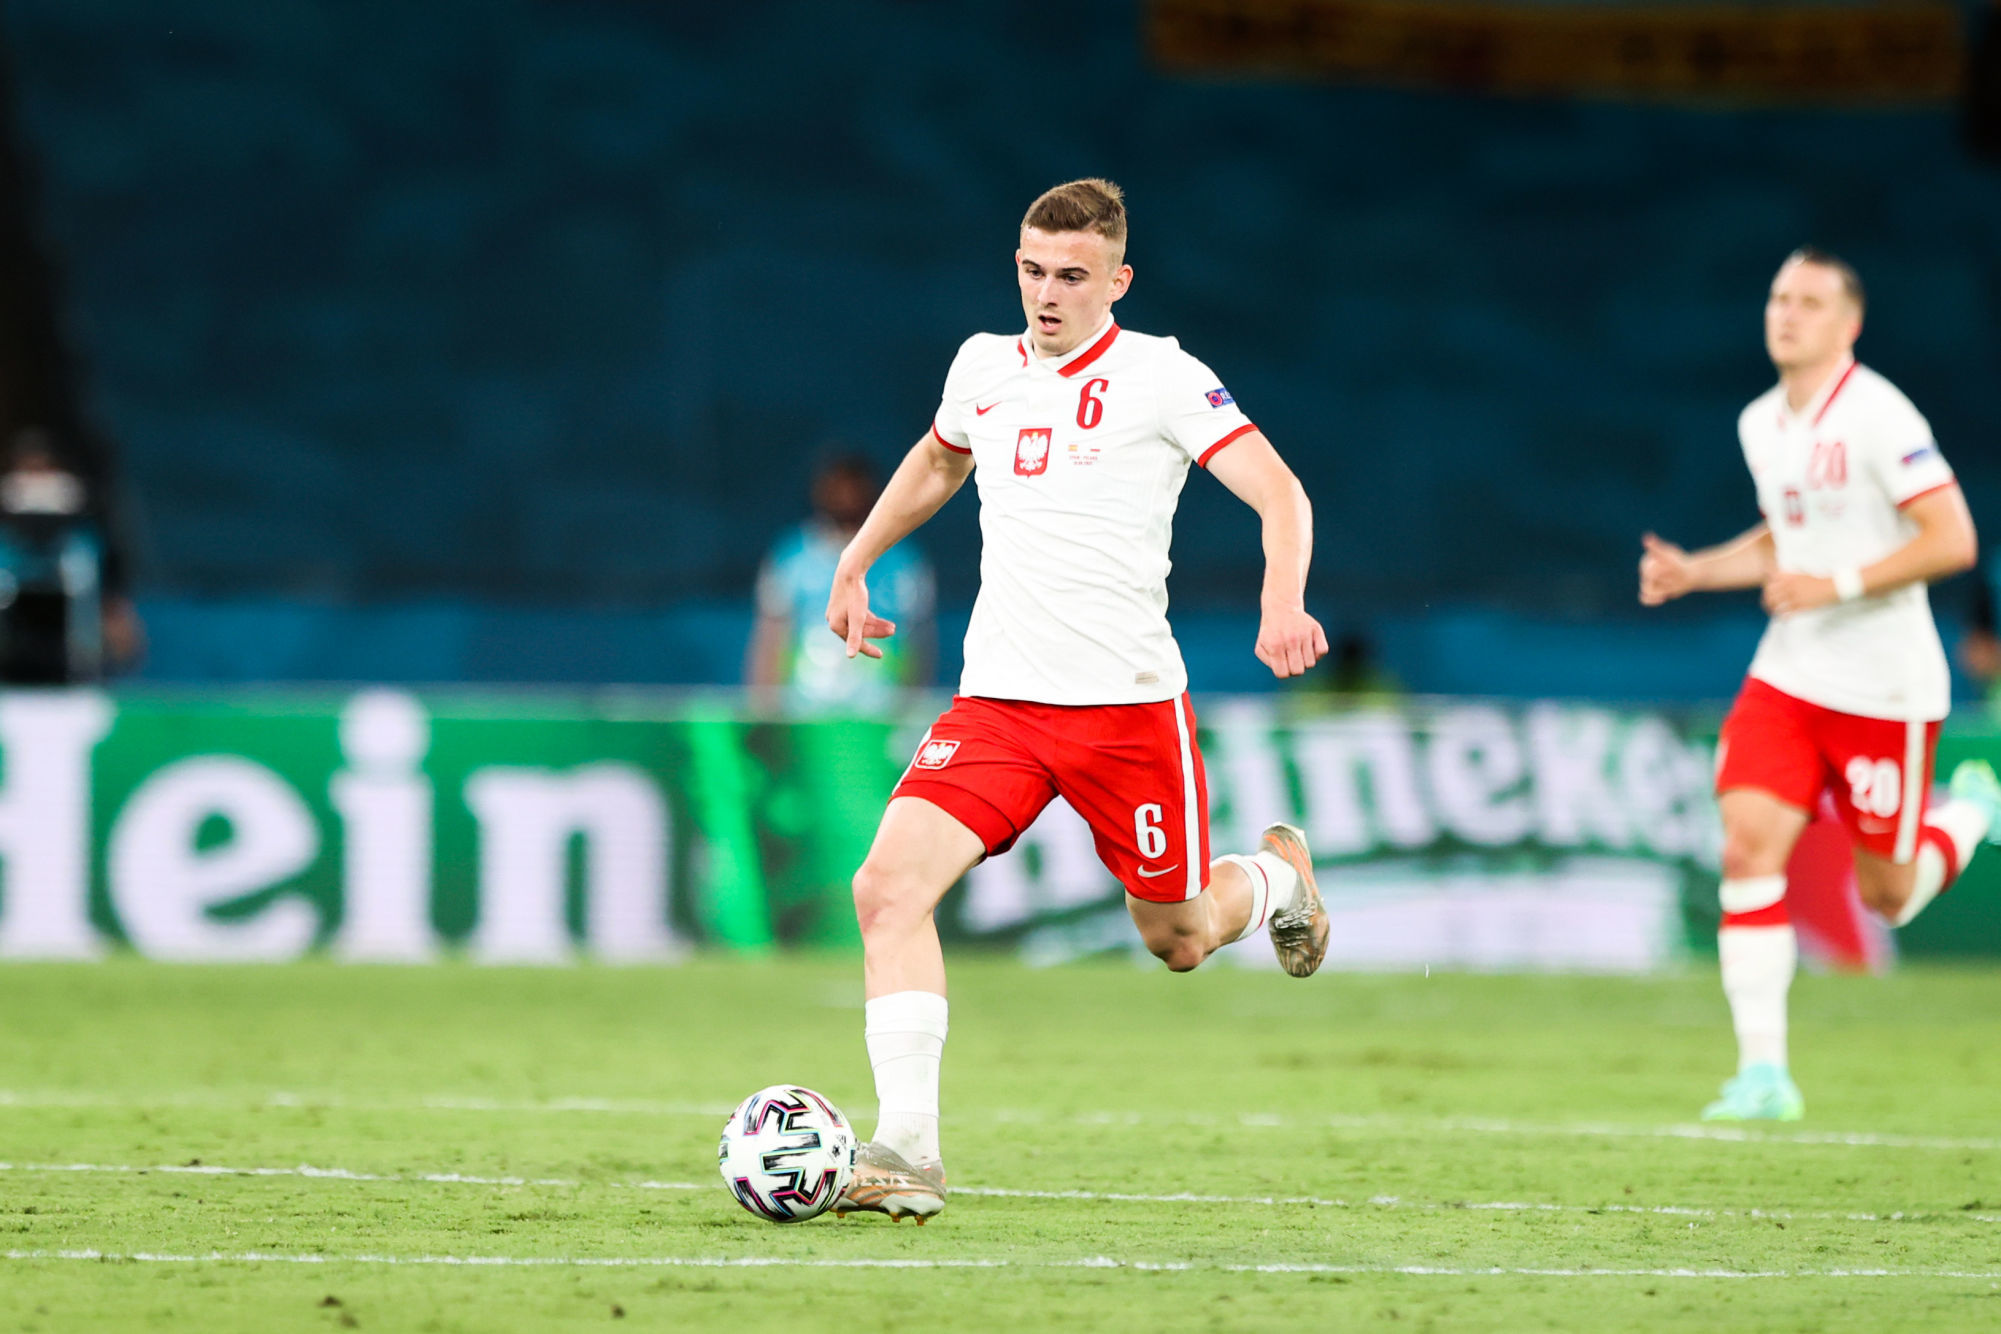 Euro 2020 : Kacper Kozłowski (Pologne) devient le plus jeune joueur à disputer un Euro